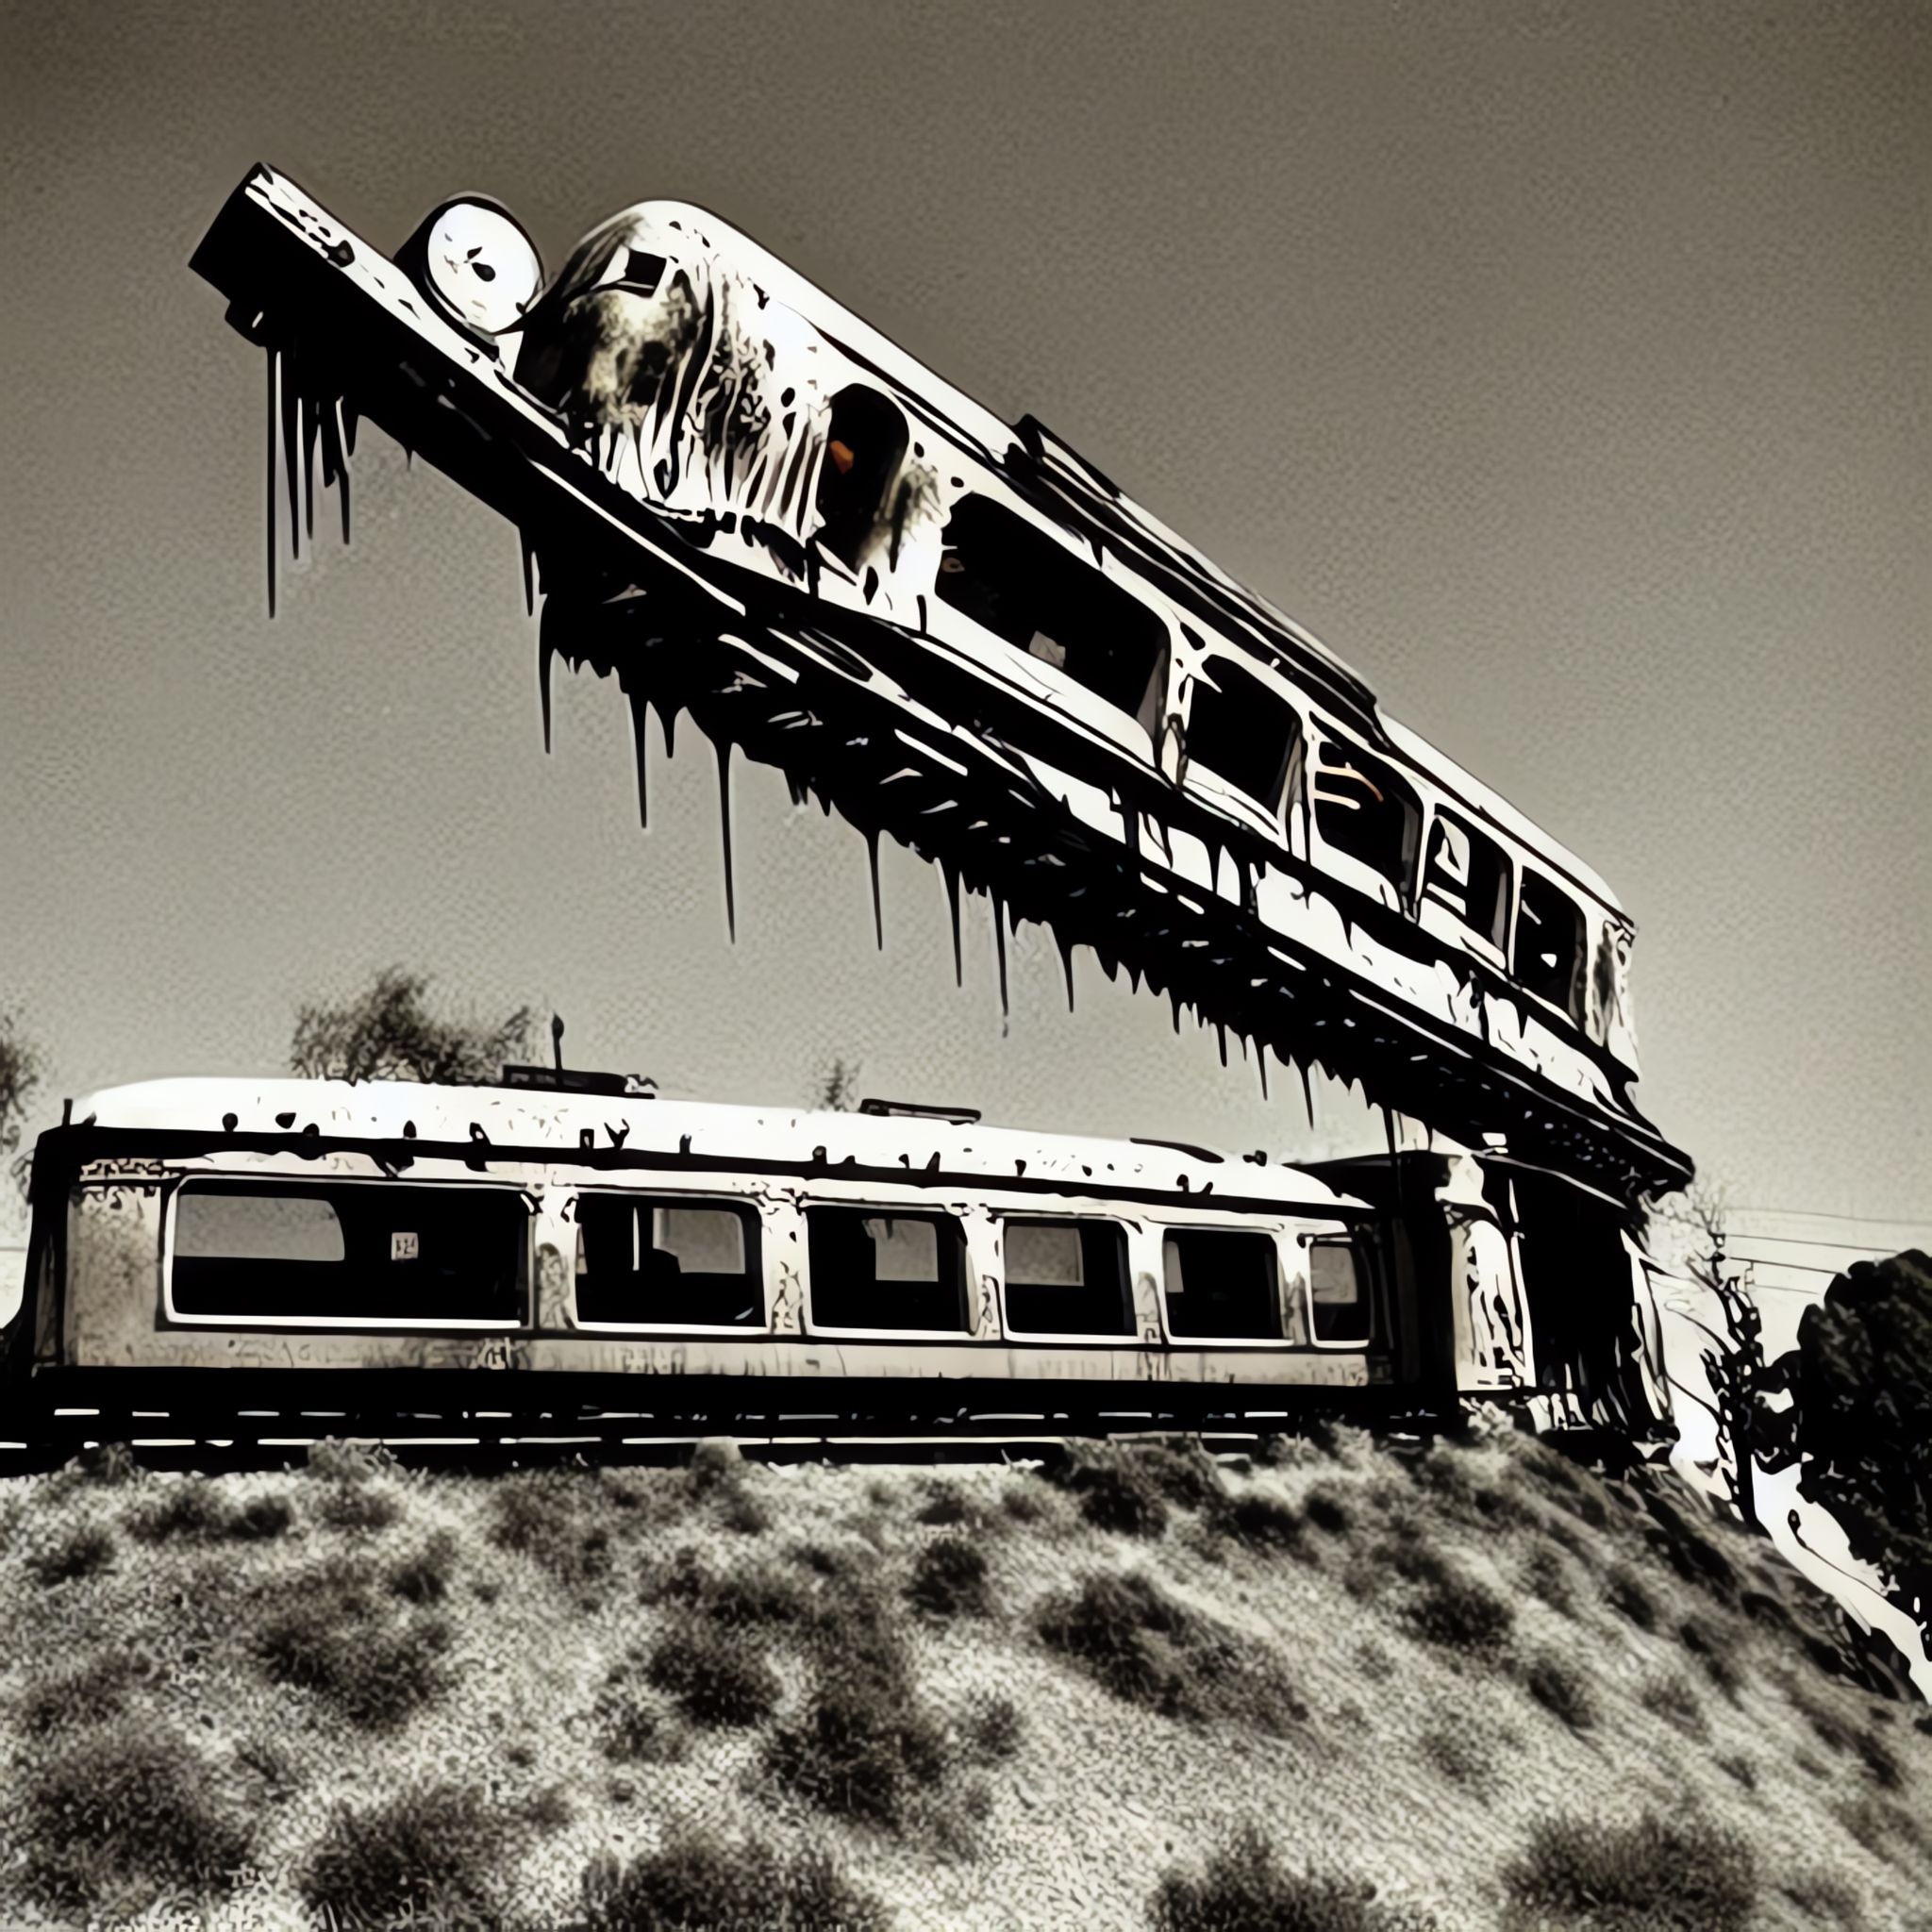 Melting-Vintage-train-dali-surreal-bt92